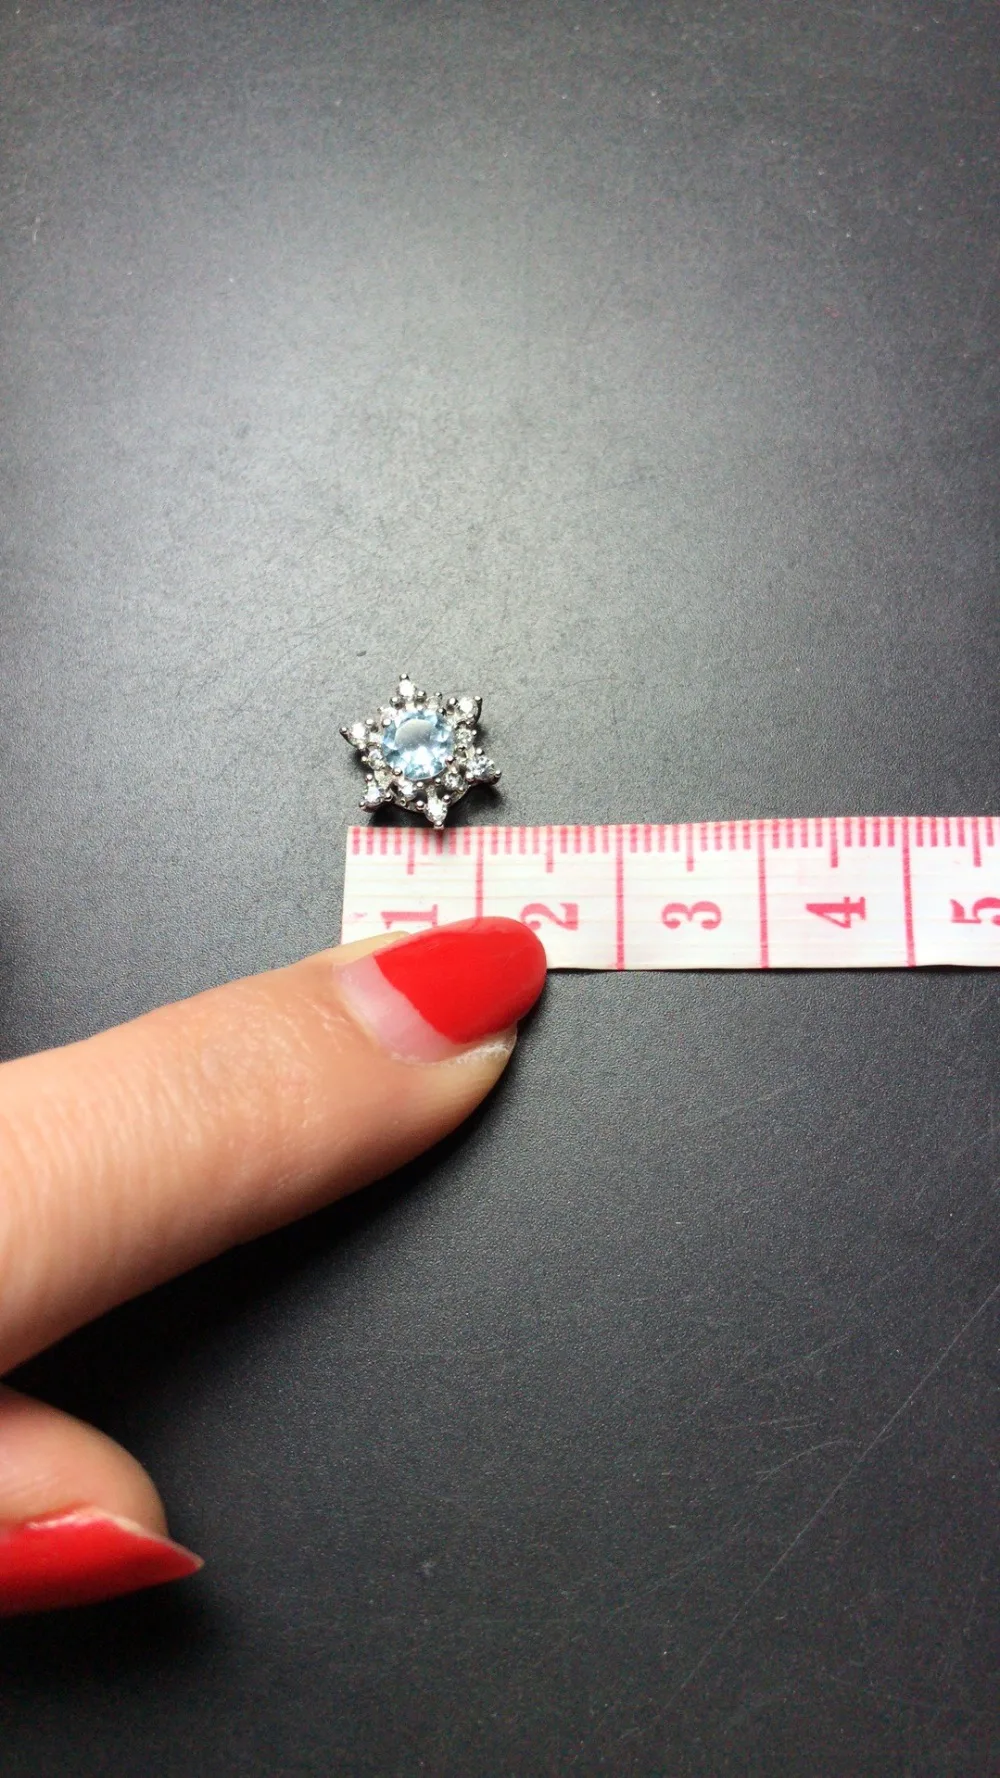 Fidelity натуральный 5 мм аквамариновые ожерелья s925 серебро Изысканная звезда ювелирные украшения подарок для женщин натуральный синий драгоценный камень